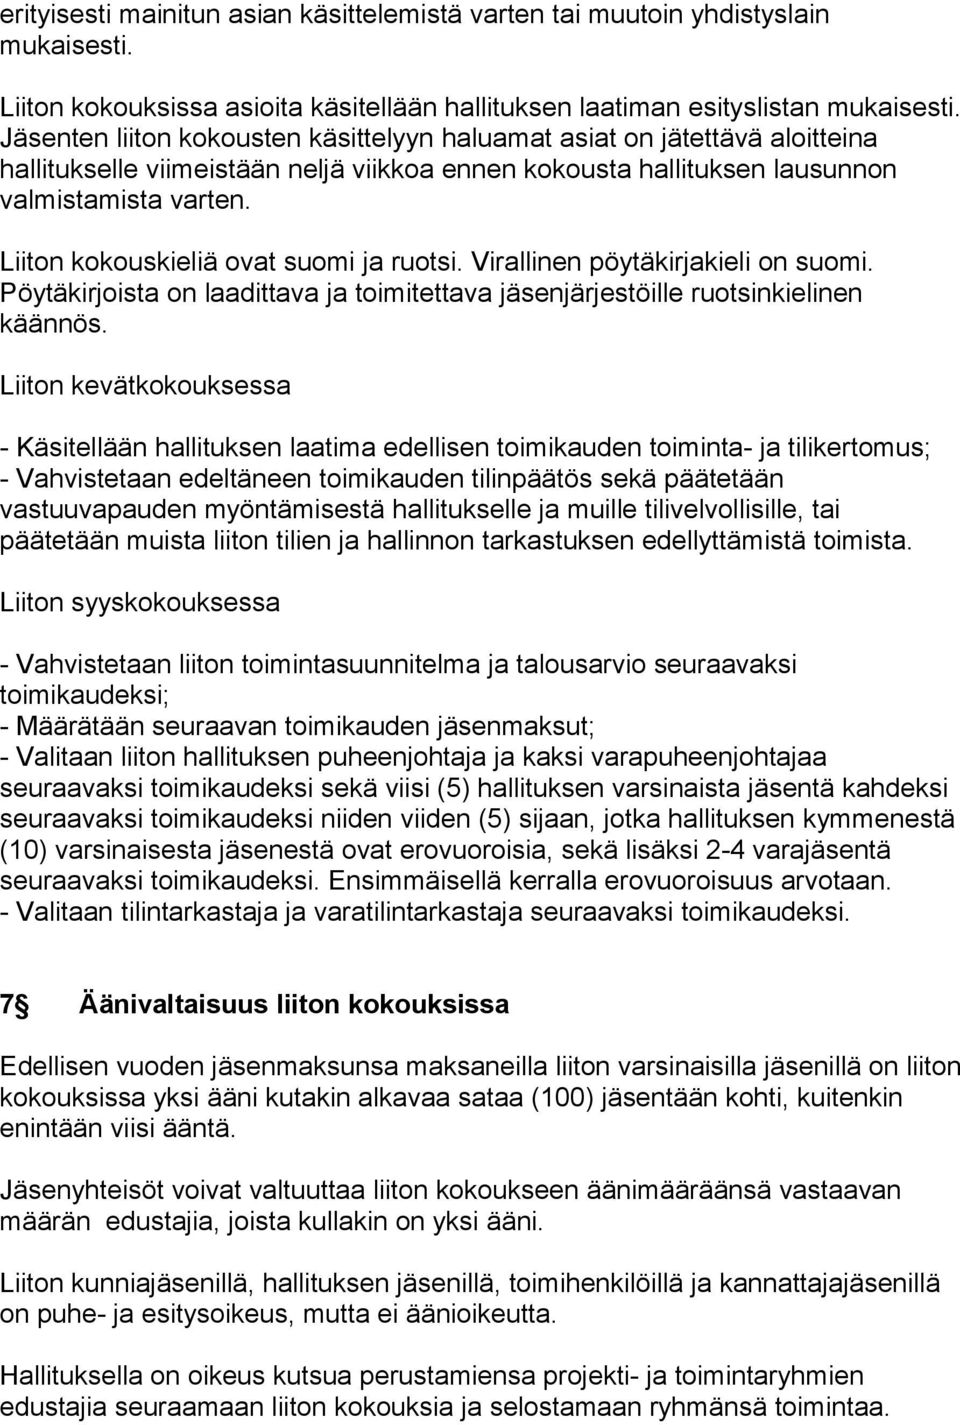 Liiton kokouskieliä ovat suomi ja ruotsi. Virallinen pöytäkirjakieli on suomi. Pöytäkirjoista on laadittava ja toimitettava jäsenjärjestöille ruotsinkielinen käännös.